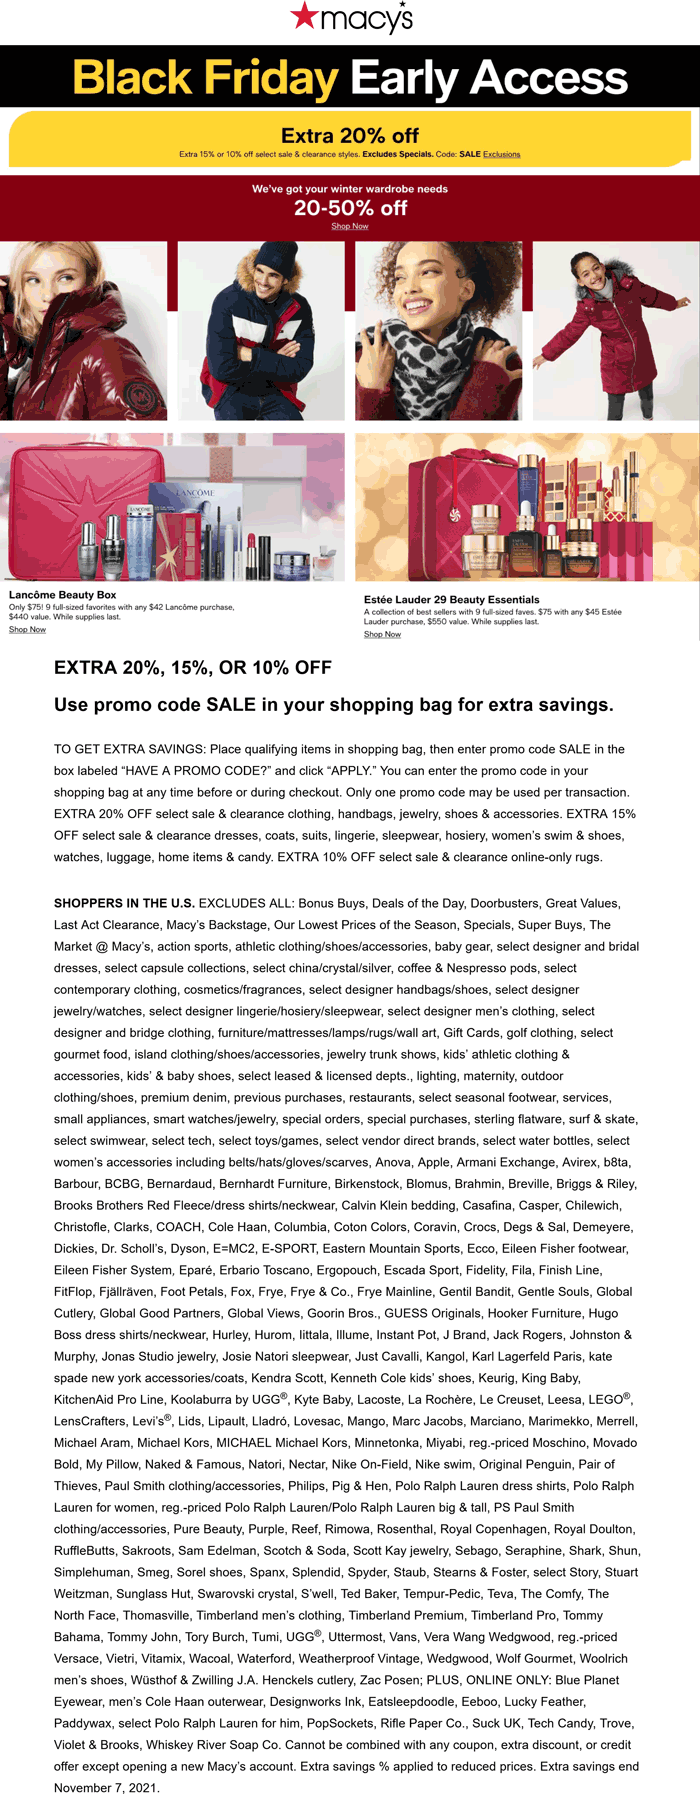 Macys stores Coupon  Extra 20% off at Macys via promo code SALE #macys 